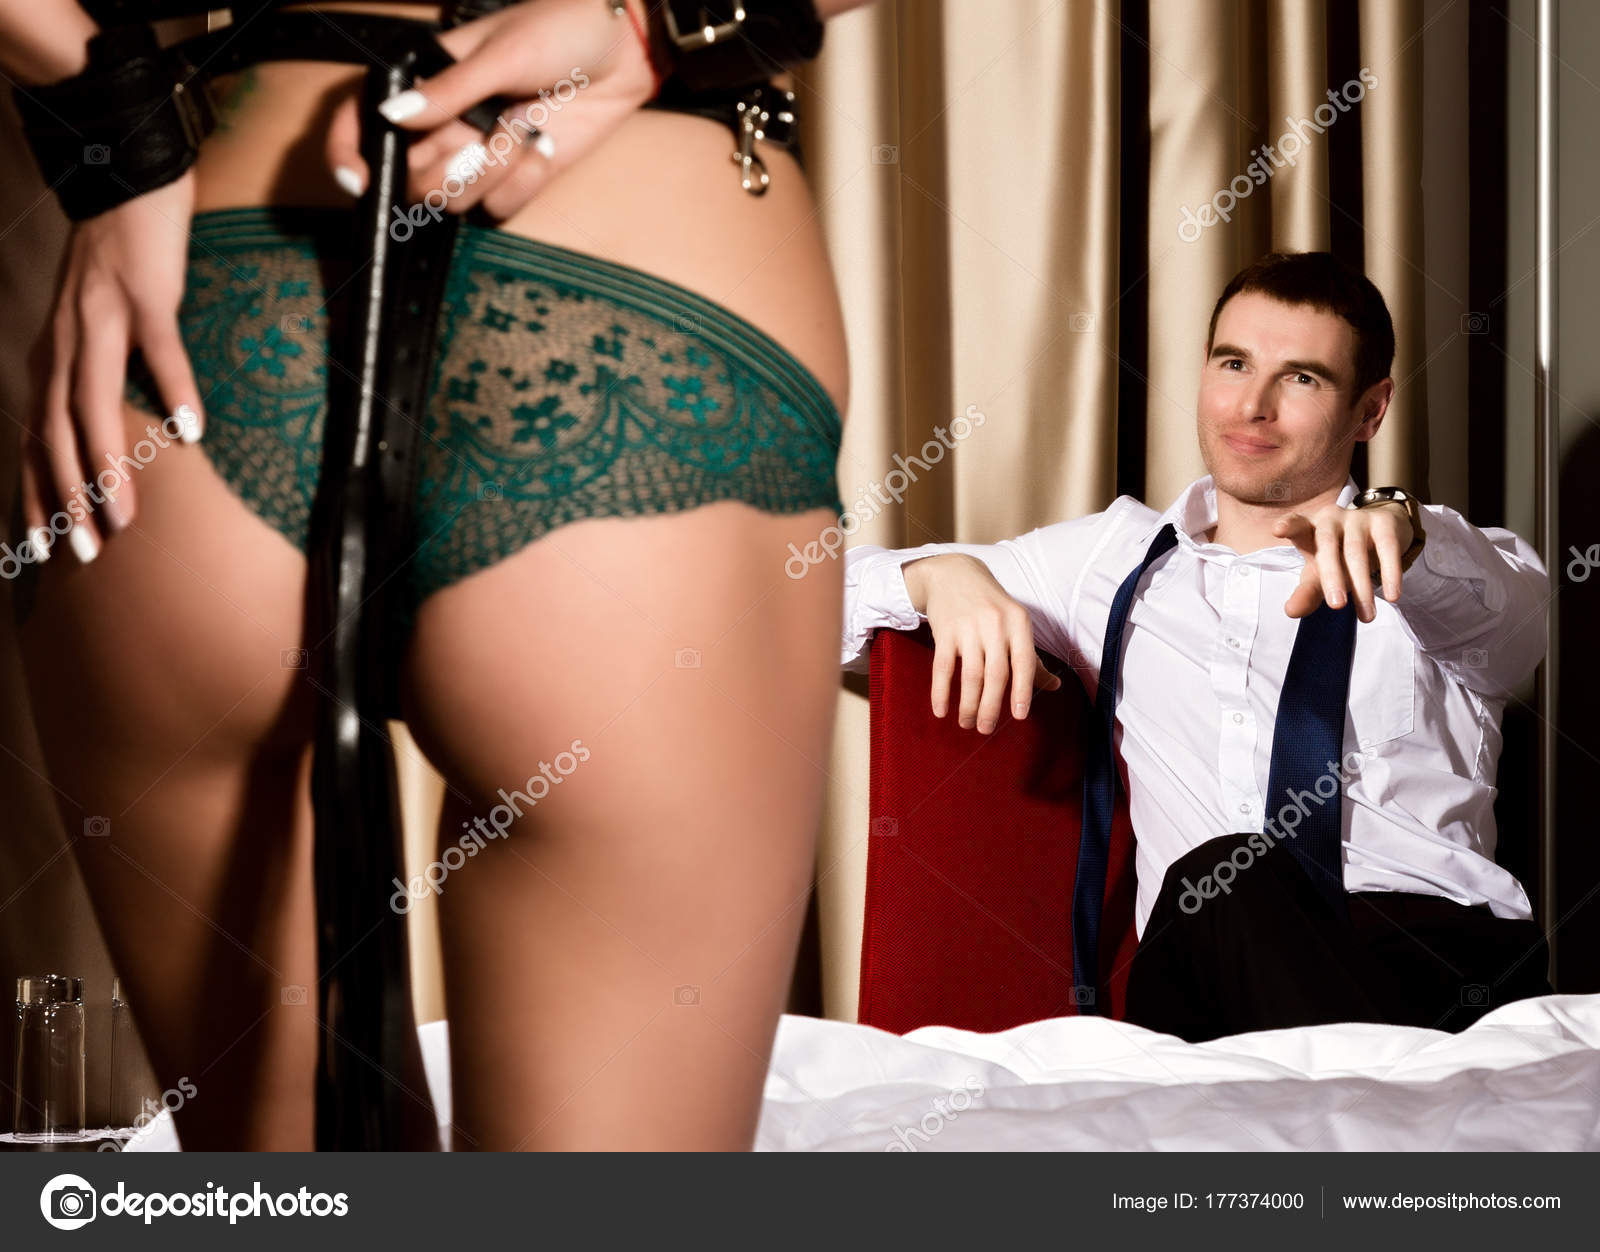 Доминирующая сексуальная женская задница в трусах с кнутом, стоящим перед красивым парнем. Концепция БДСМ стоковое фото ©sandy-che.yandex.ru 177374000